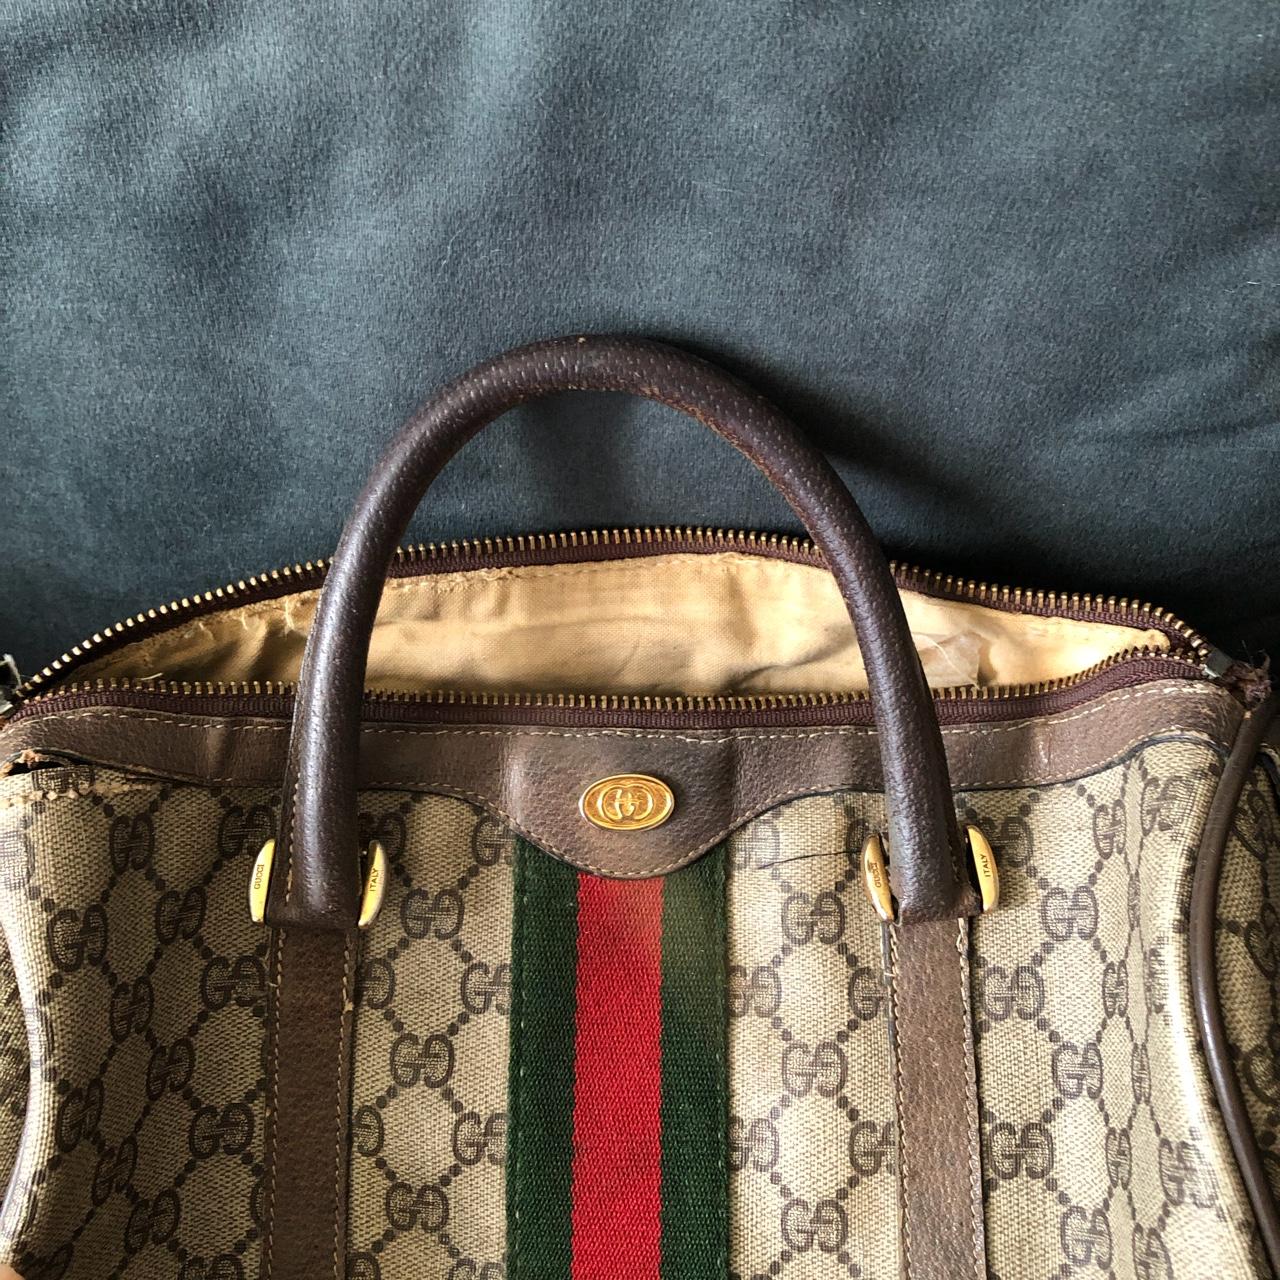 1980s Gucci Web Doctors bag : r/handbags